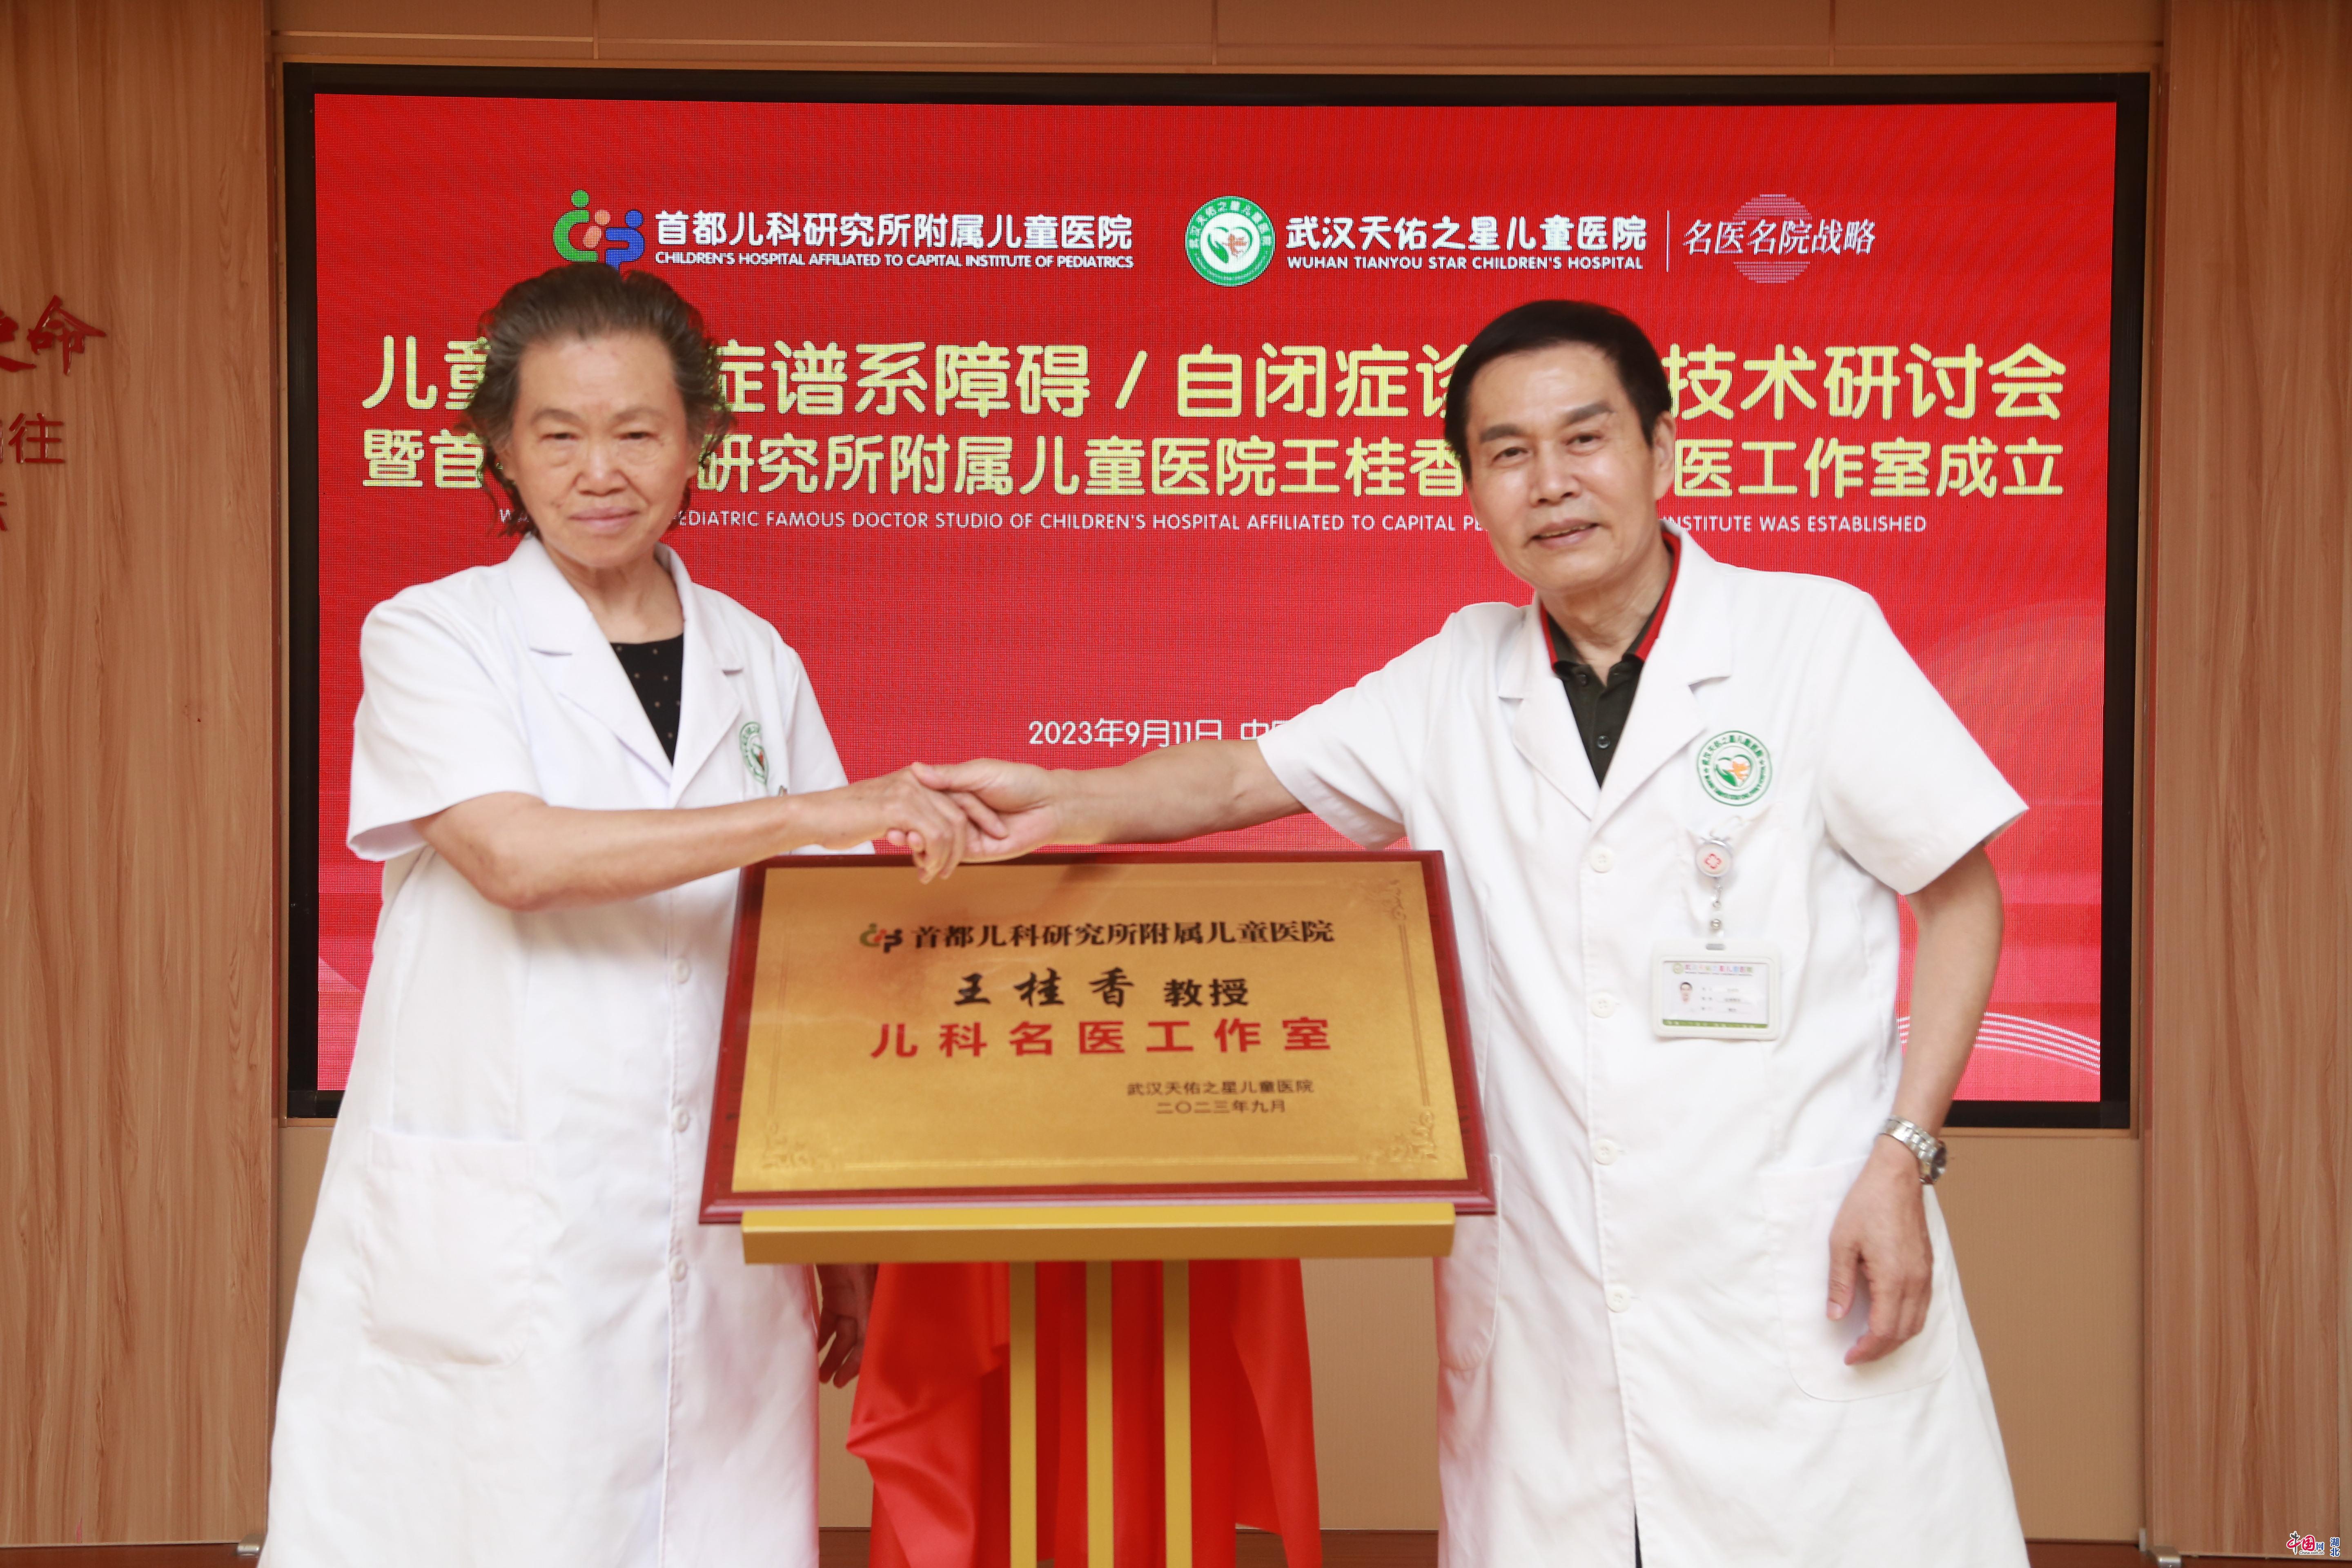 定期联合会诊开展学术讲座  北京儿科专家工作室在汉揭牌